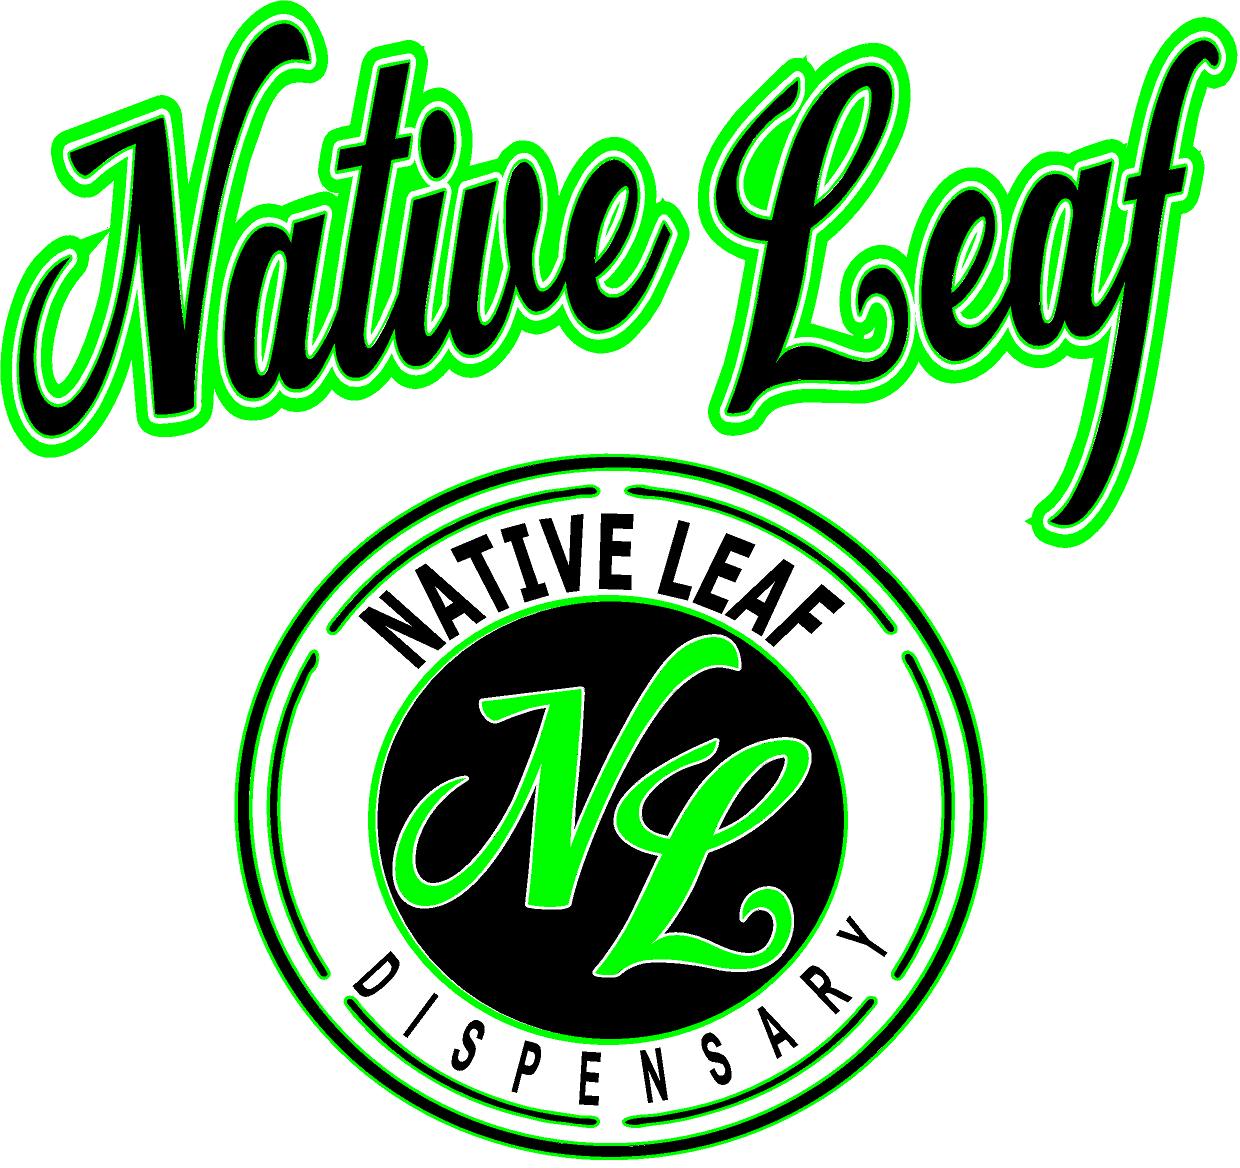 Native Leaf Grow Supply Shop logo